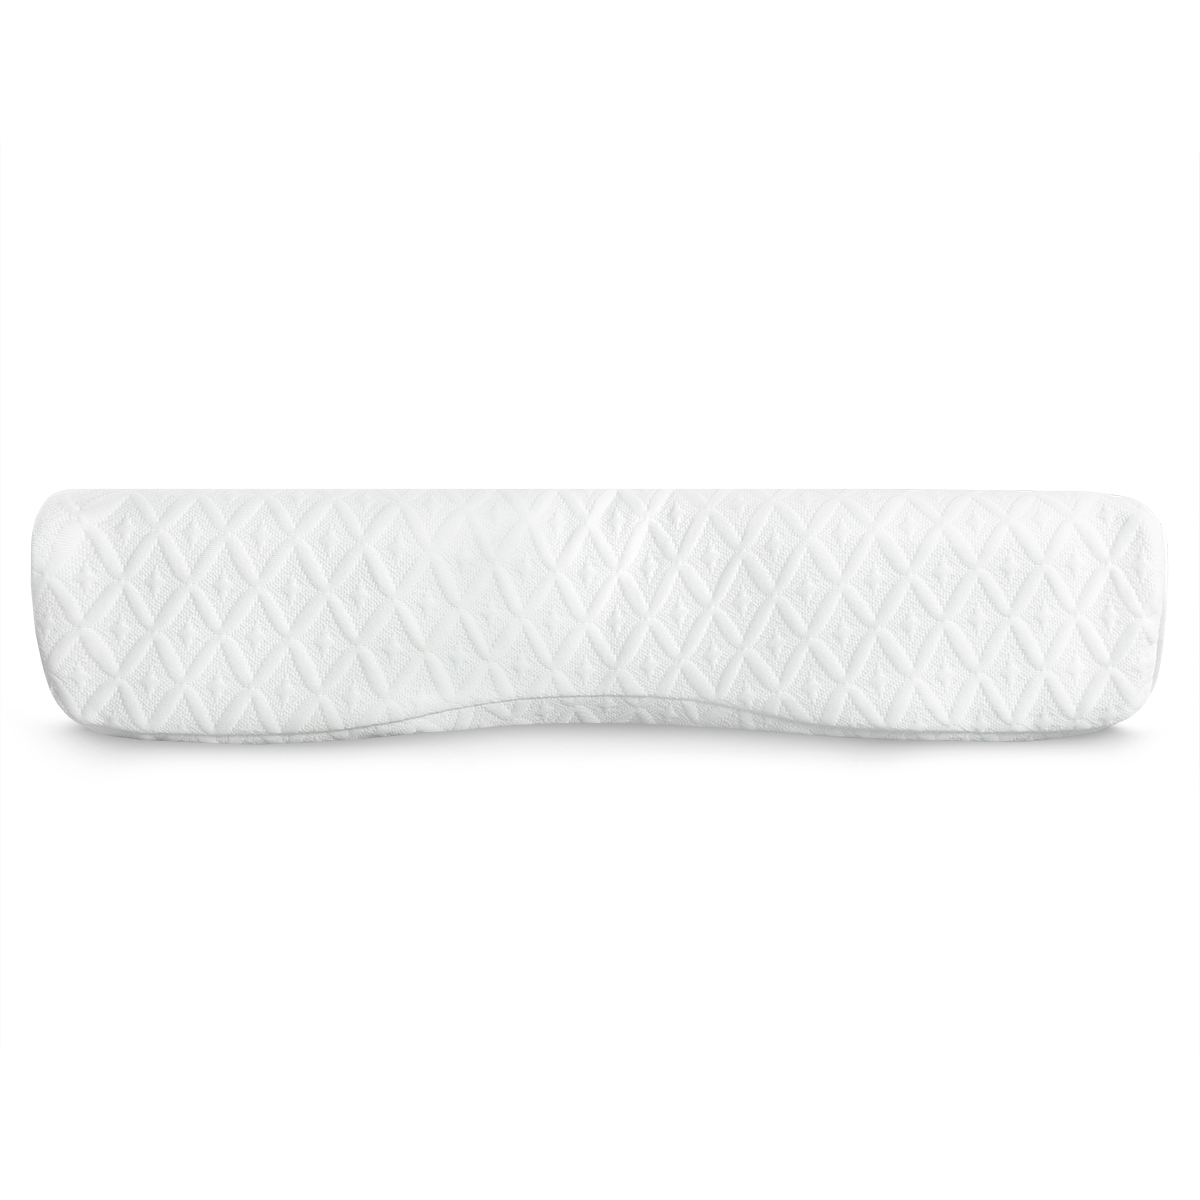 Анатомическая подушка Sleepix Нарита белая 54х32х6/10 см, цвет белый - фото 6